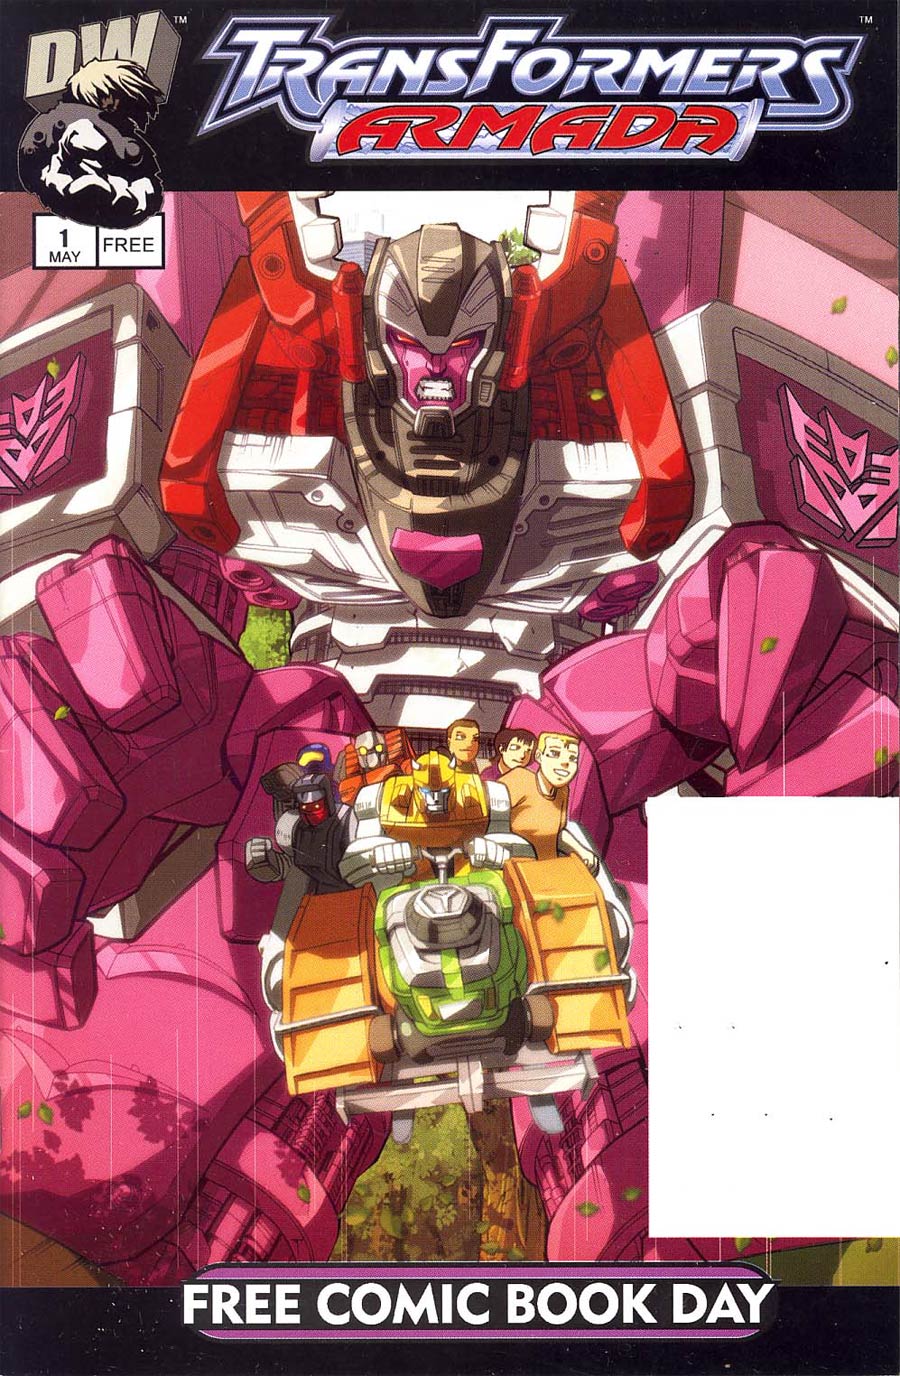 FCBD 2003 Transformers Armada